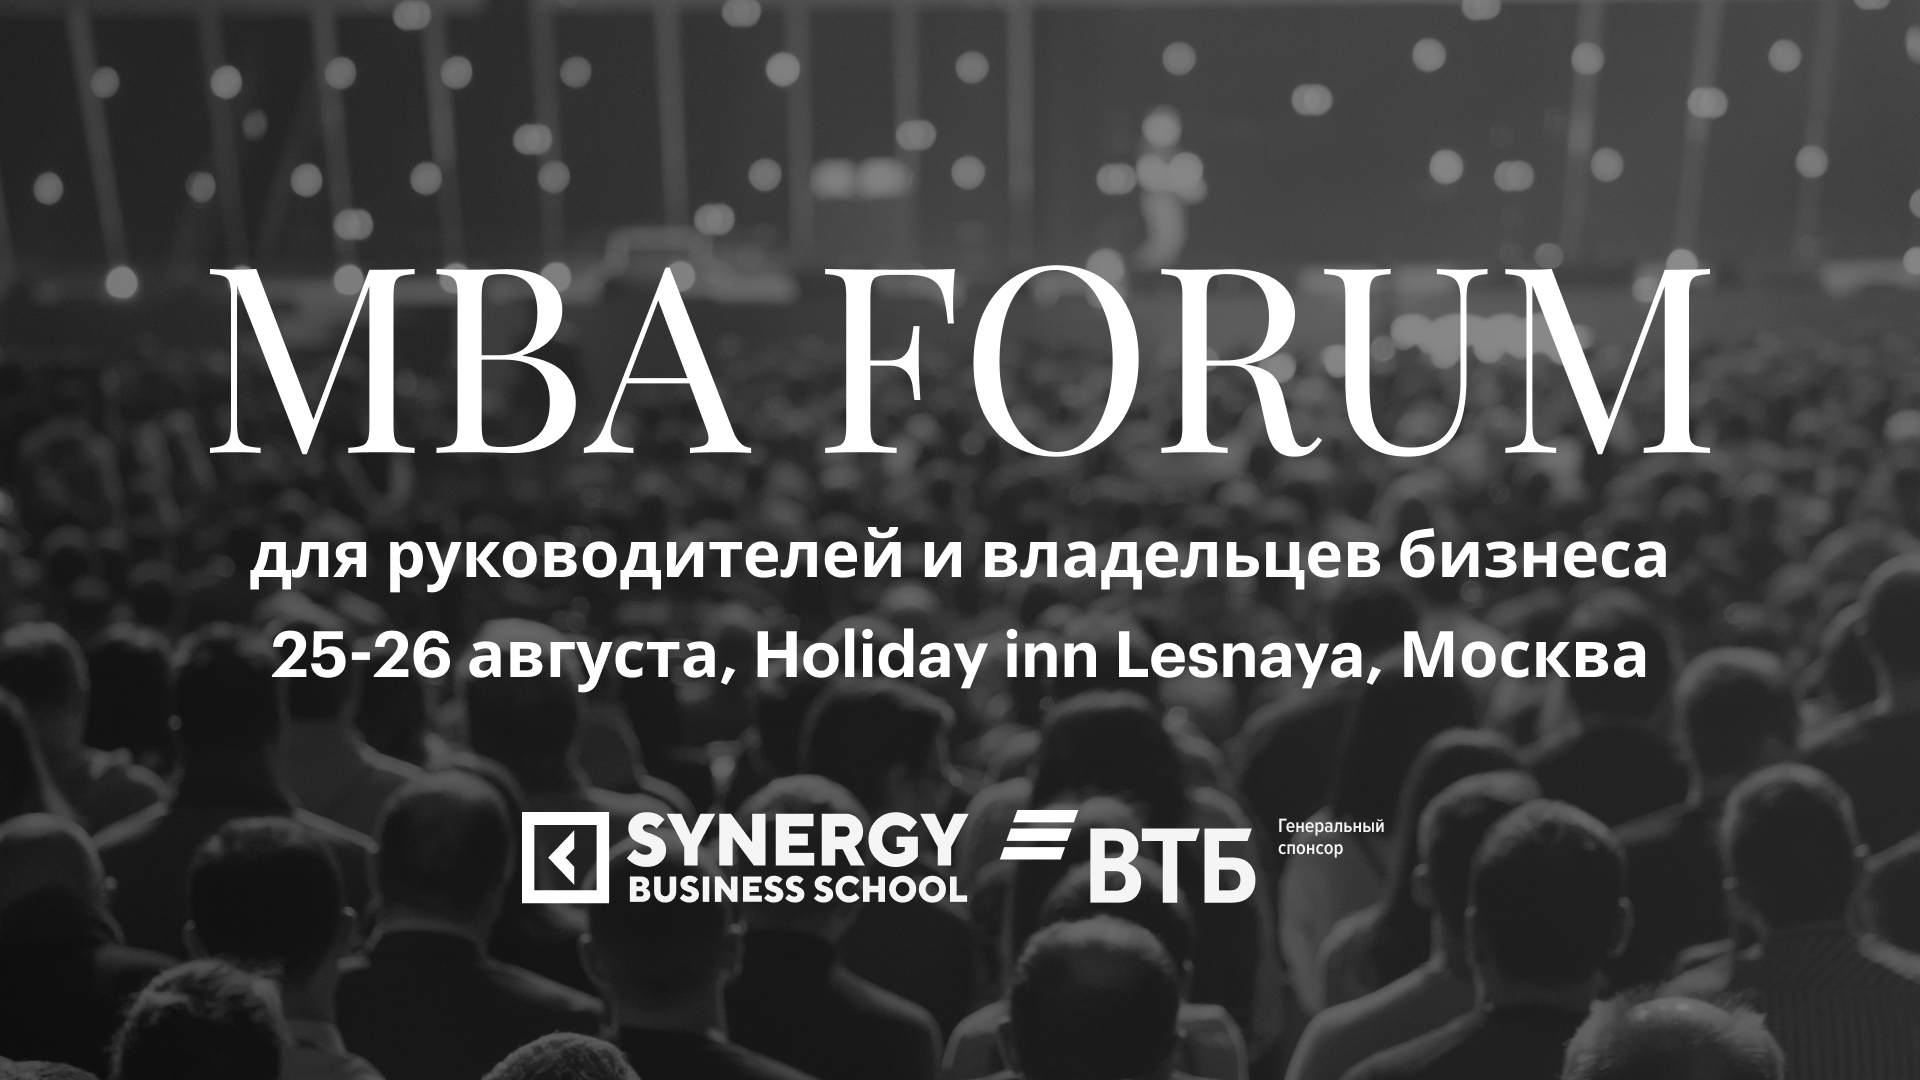 Synergy MBA Forum